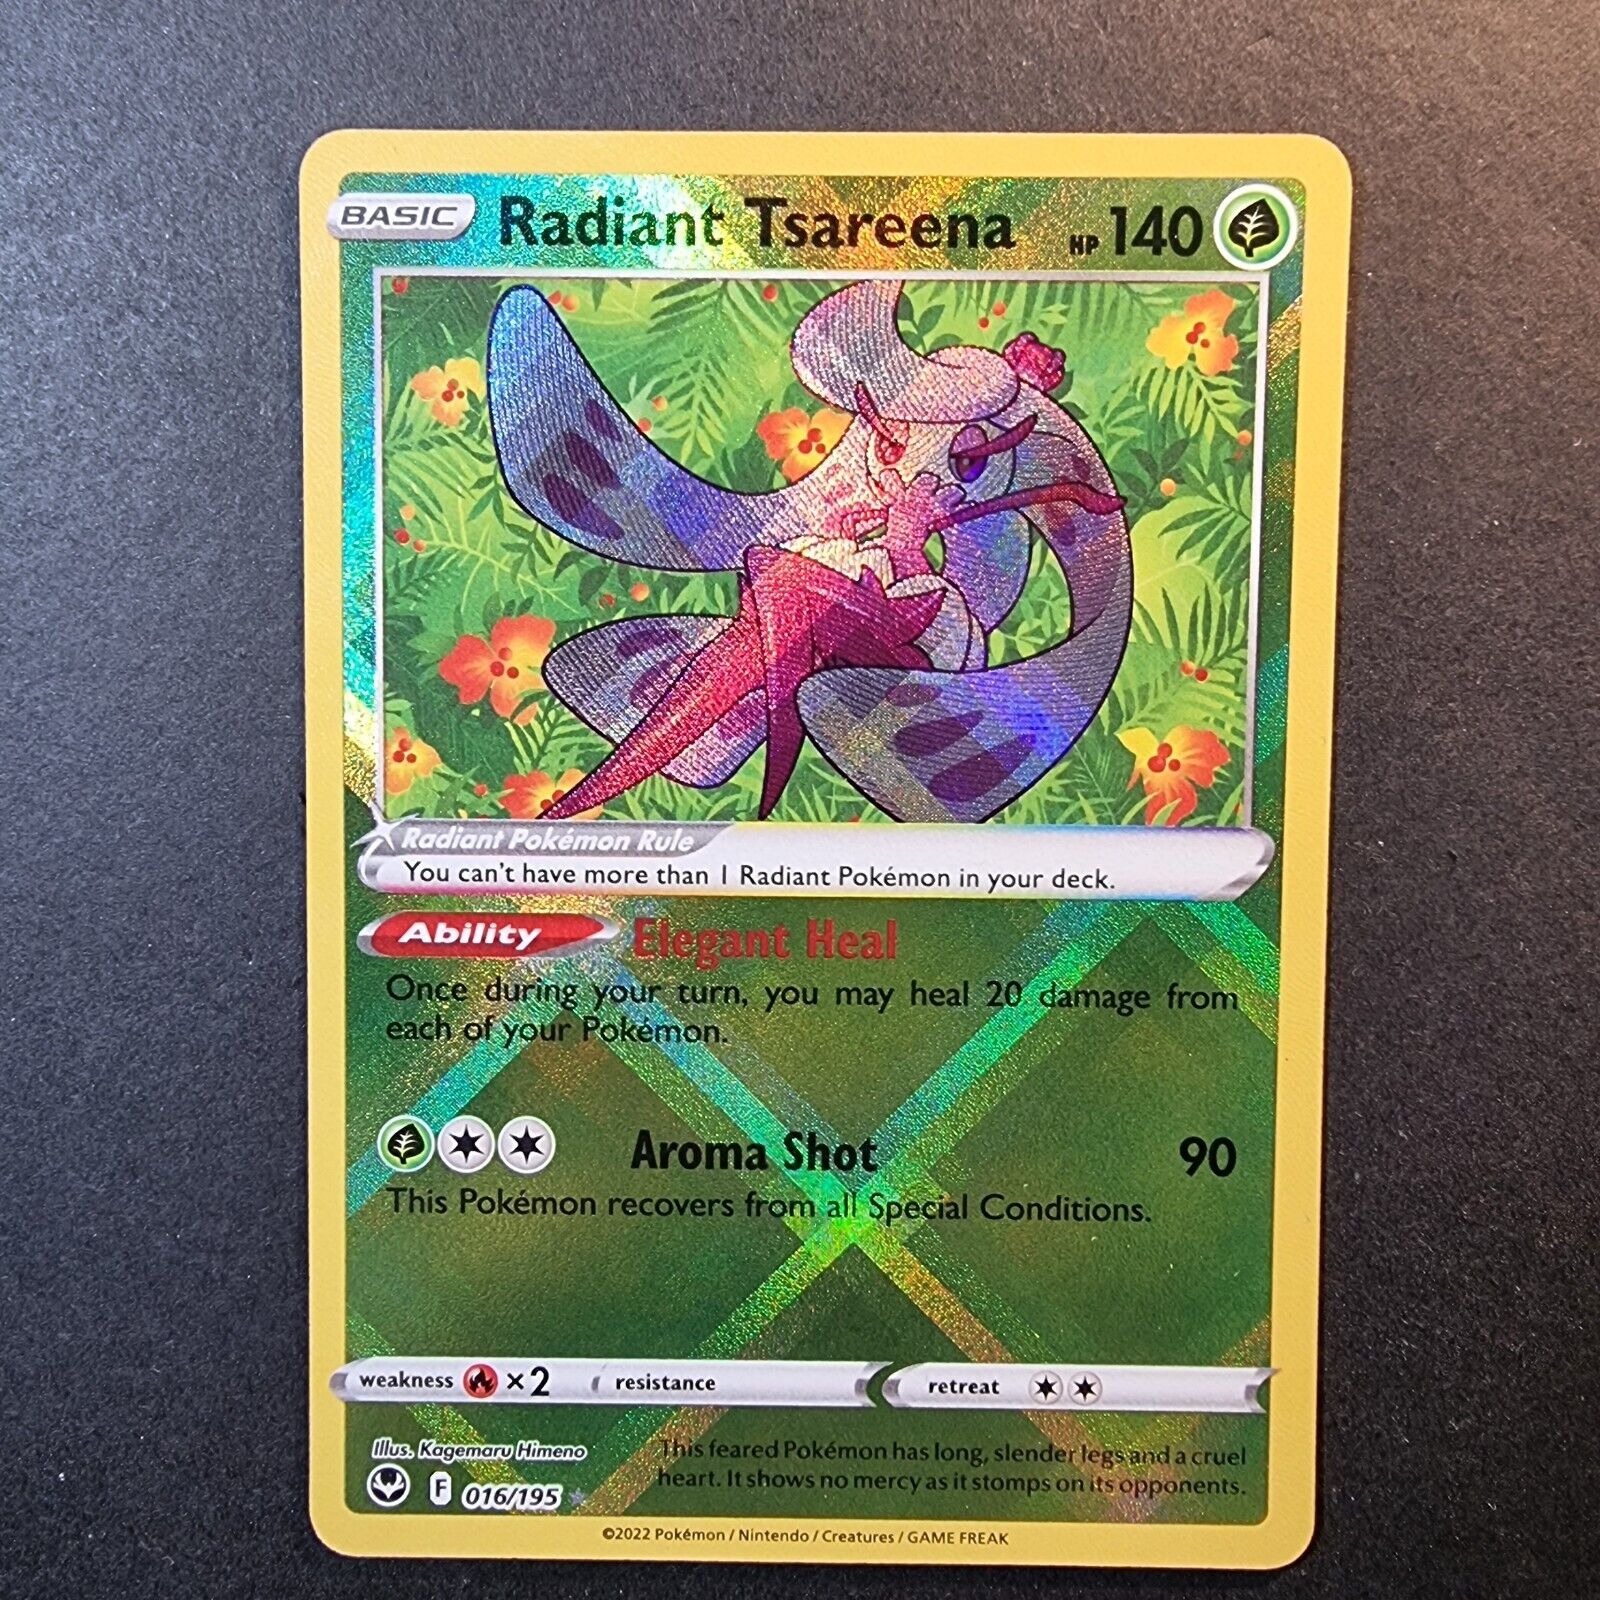 Radiant Tsareena 016/195 Silver Tempest Rare Pokemon Card 2022 in Toploader